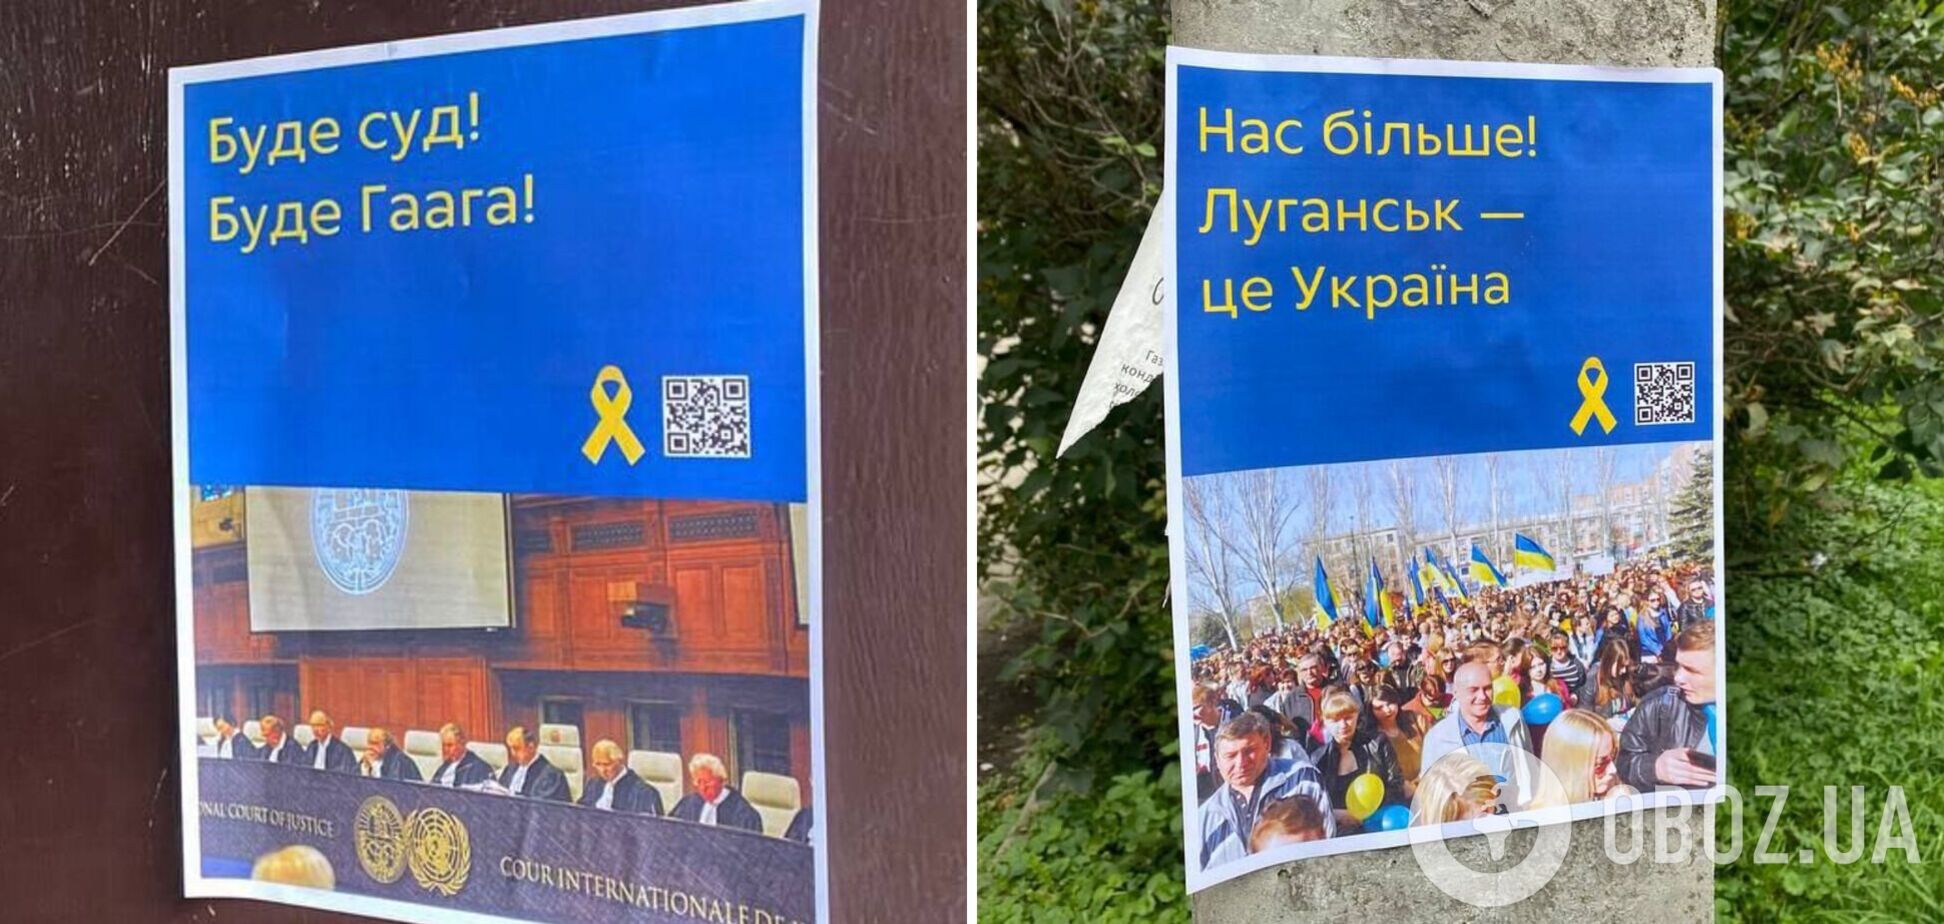 'Нас больше': партизаны напомнили оккупантам, что Донецк и Луганск – это Украина. Фото акции